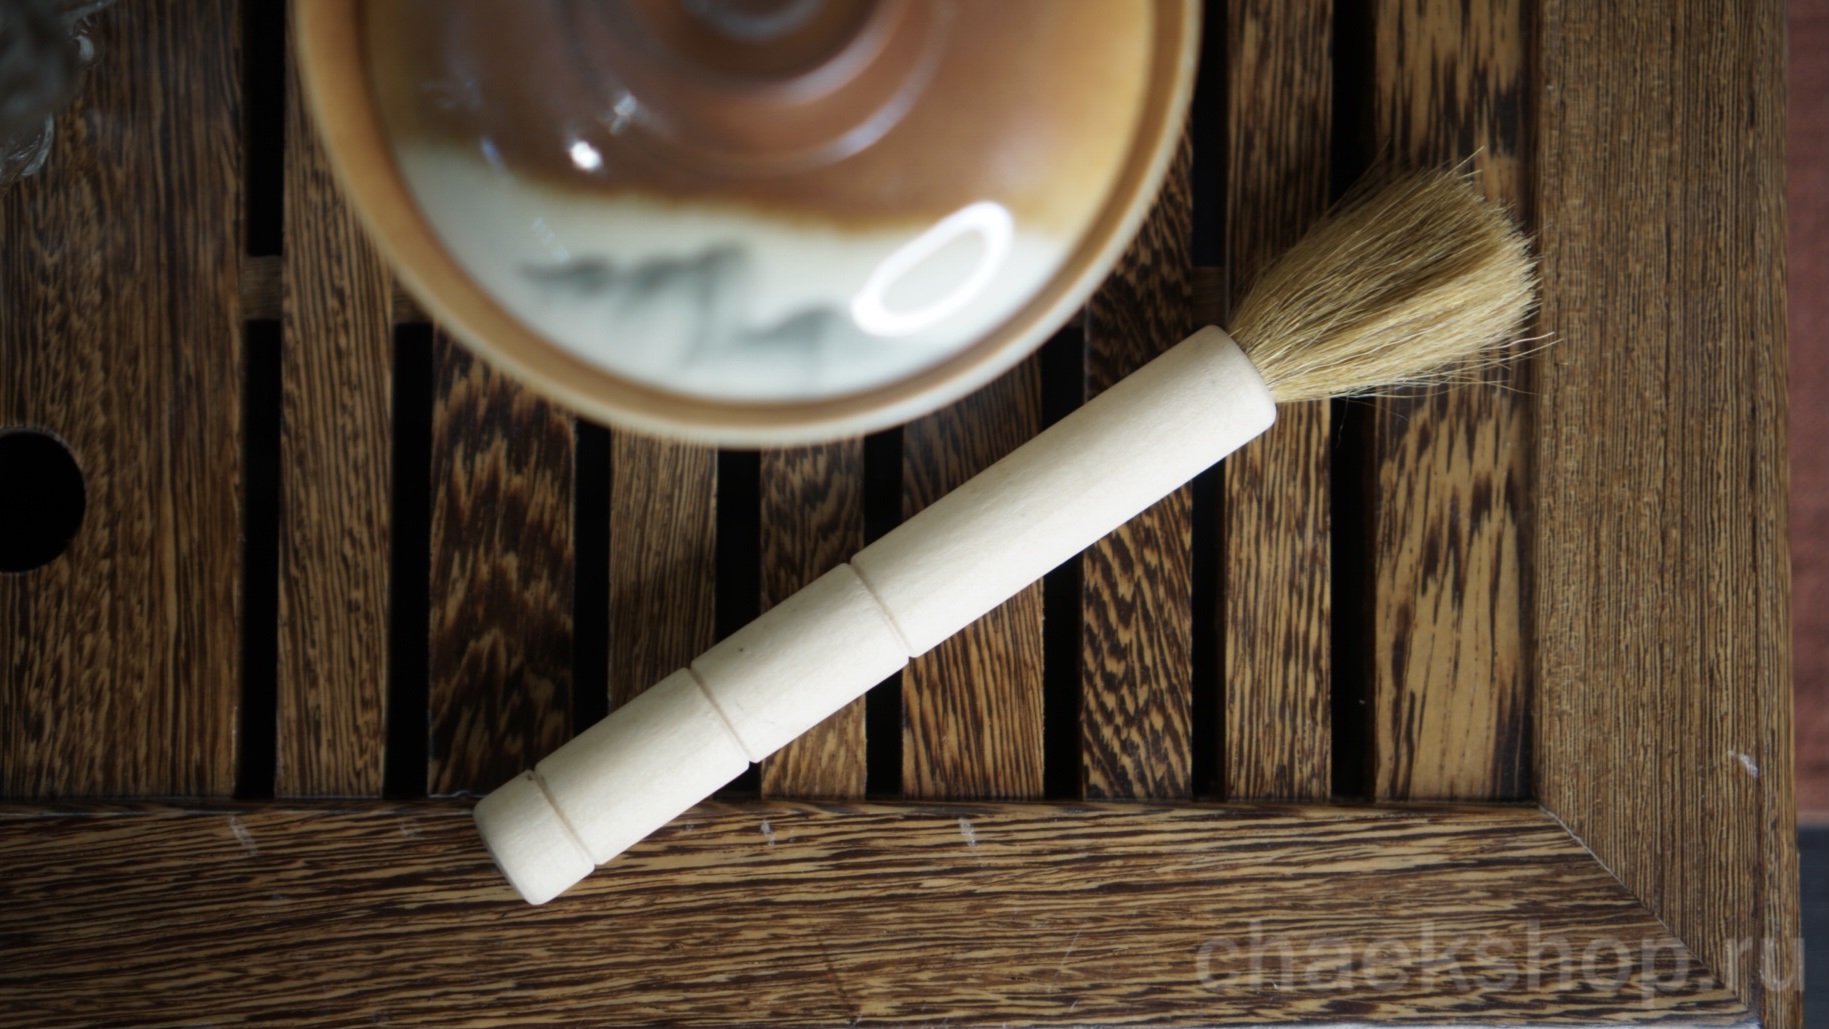   ЯнХуБи (养壶笔yǎnghú bǐ) — кисточка для «воспитания» чайника из исинской глины. Этой кистью протирают потёки чая на чайнике.